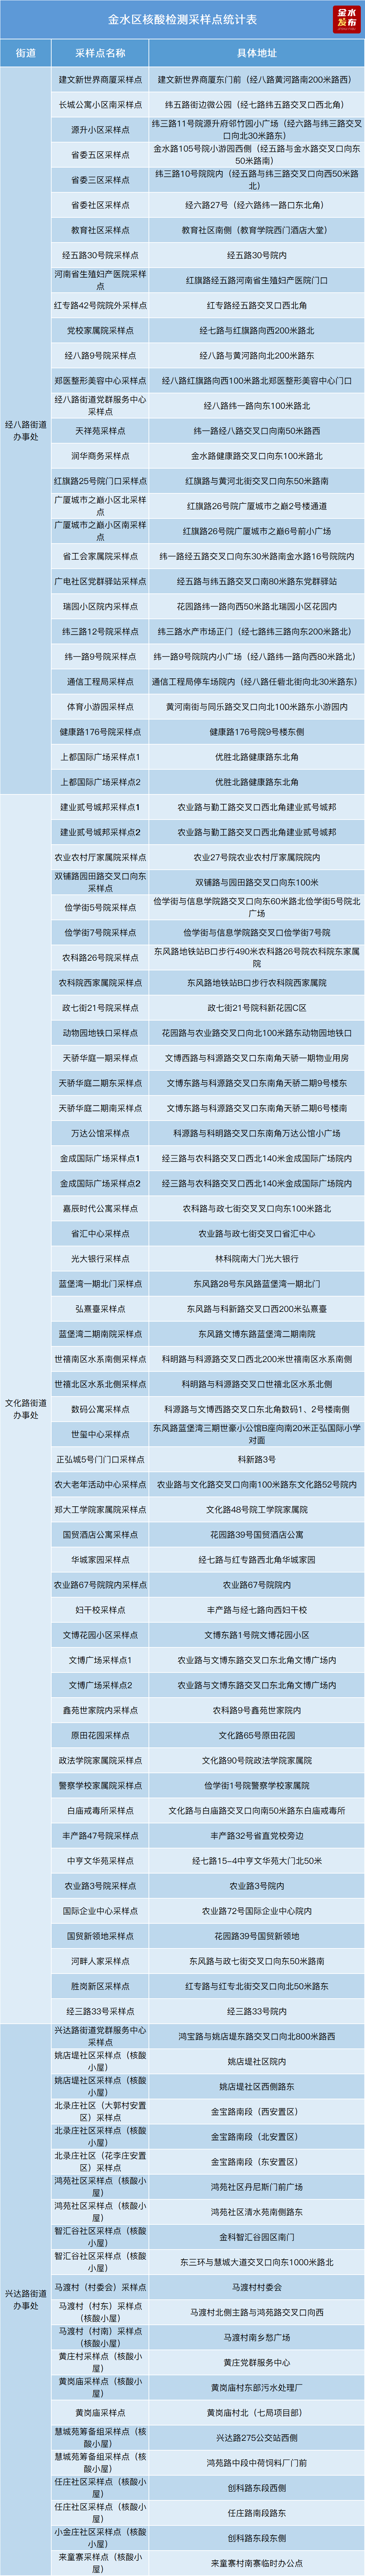 10月9日郑州金水区开展全区新冠病毒核酸筛查！